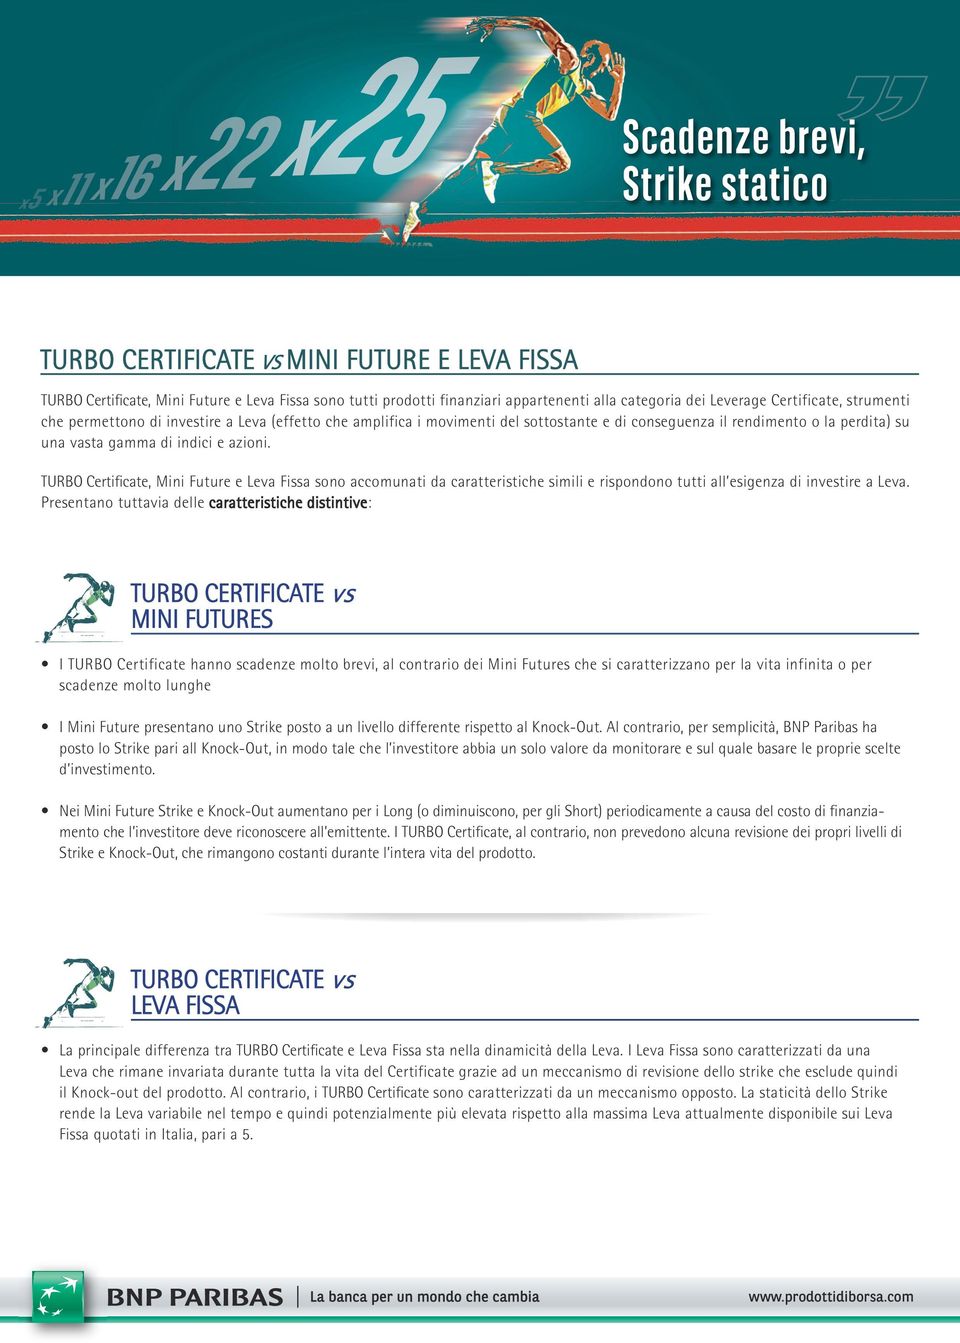 TURBO Certificate, Mini Future e Leva Fissa sono accomunati da caratteristiche simili e rispondono tutti all esigenza di investire a Leva.